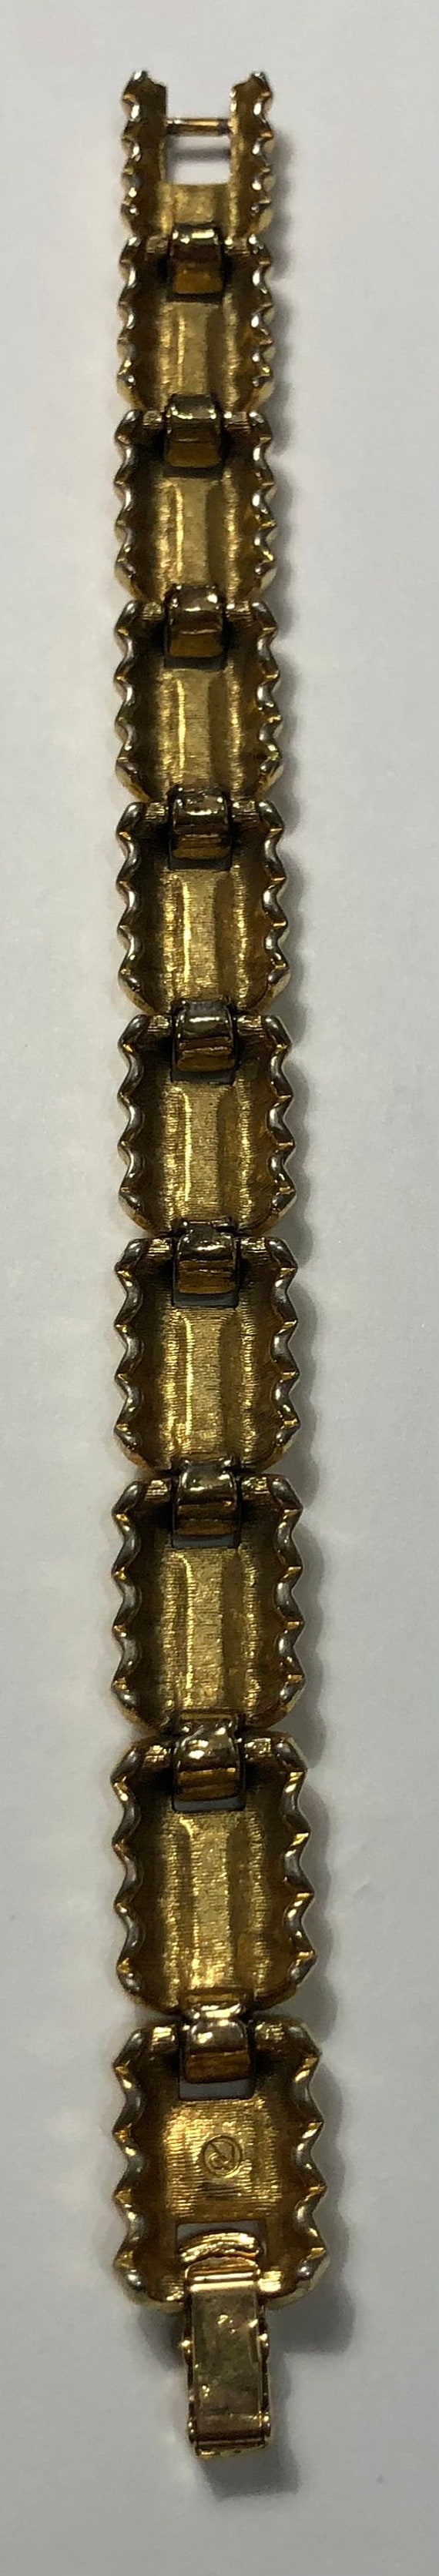 Estate Swarovski Crystal Link Bracelet - image 6